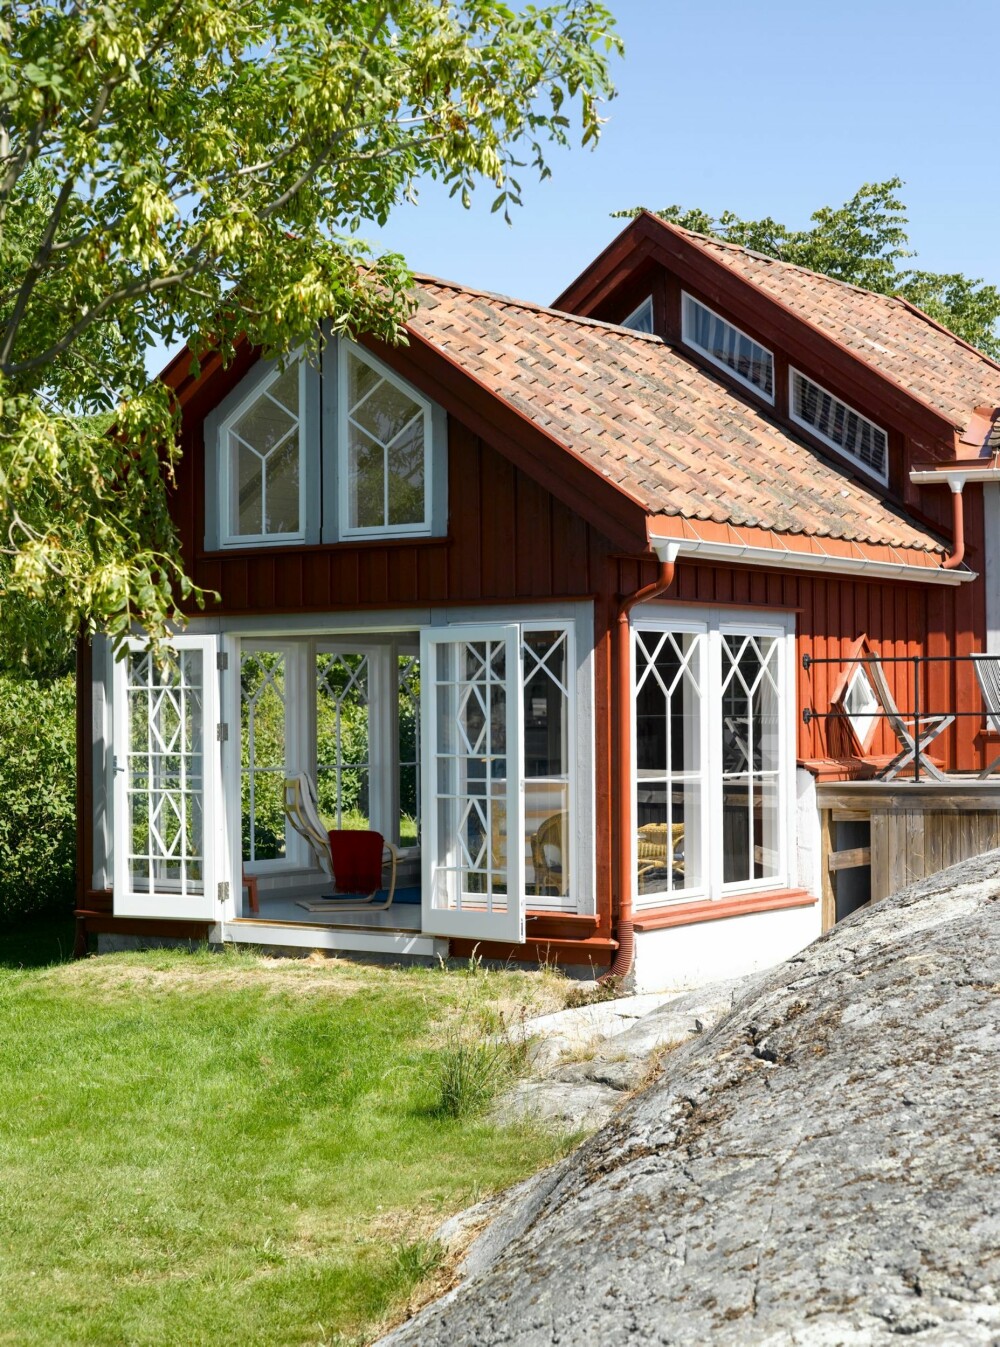 Lysthuset i skjærgården: Det lille huset fra slutten av 1800-tallet har i dag blitt en moderne og fargerik sommerhytte. De store vinduene i tilbygget åpner opp mot lyset og utsikten i skjærgården ved Kragerø.